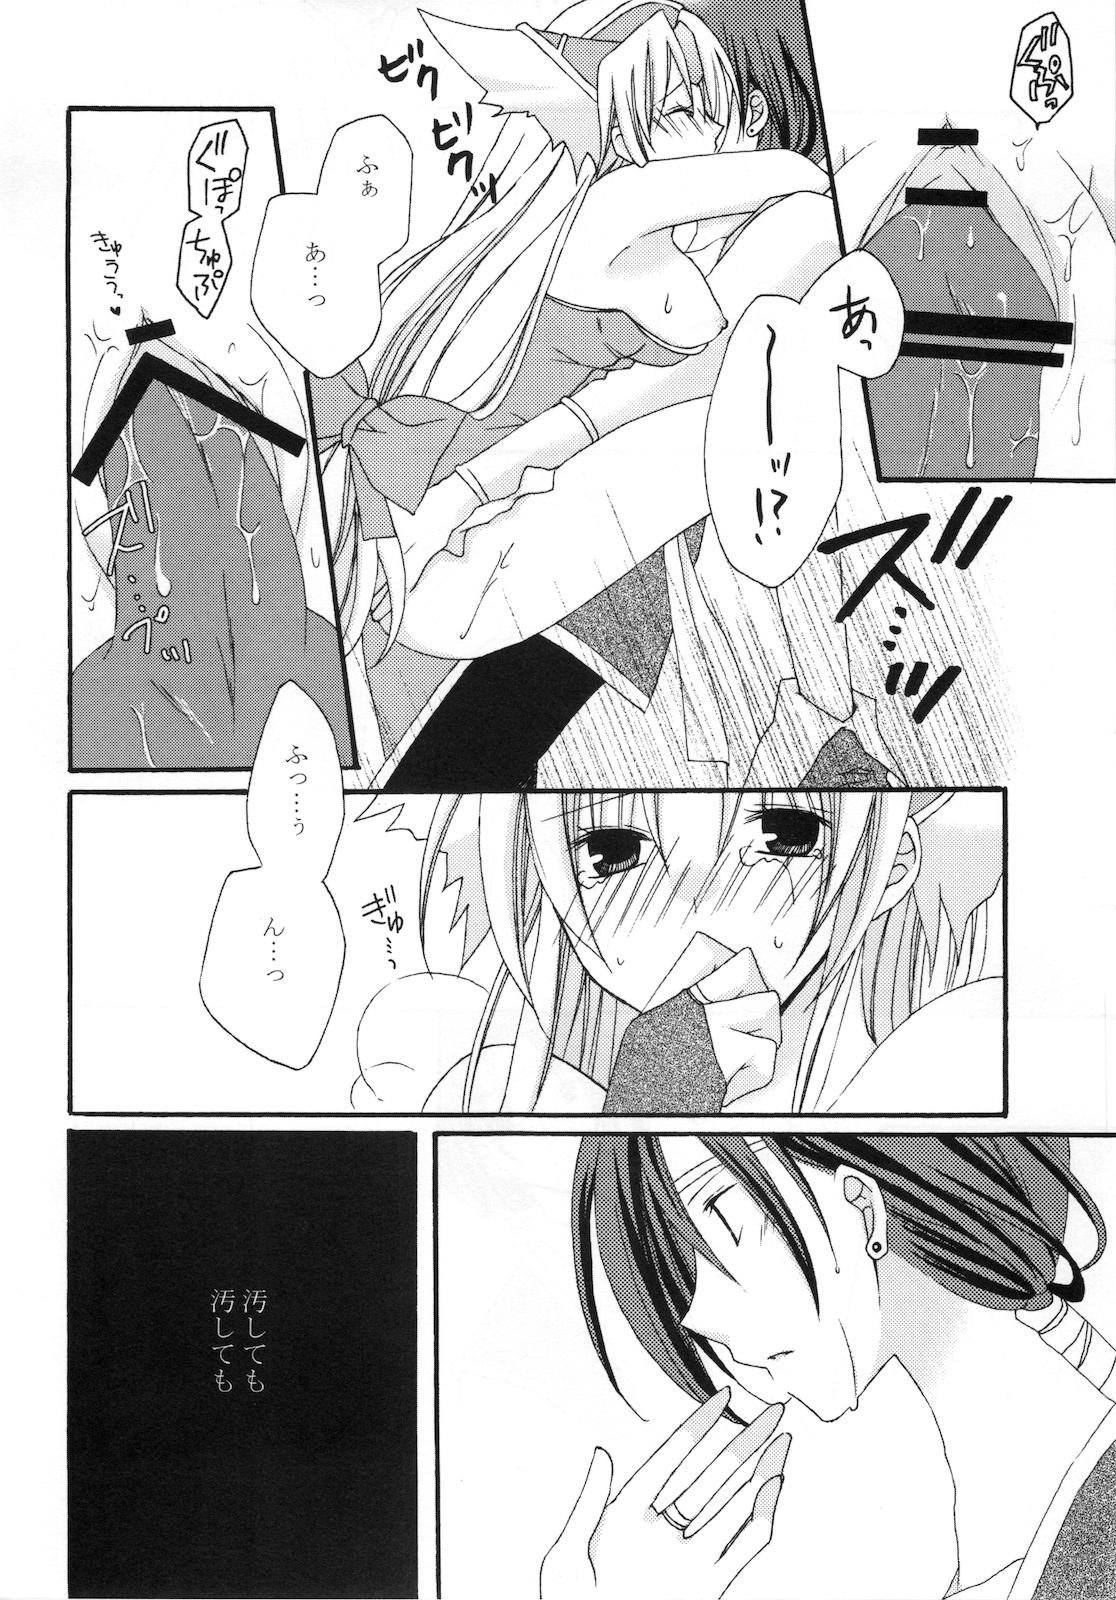 Sucks Masshiro Sekai - Seiken densetsu 3 Sexo - Page 12